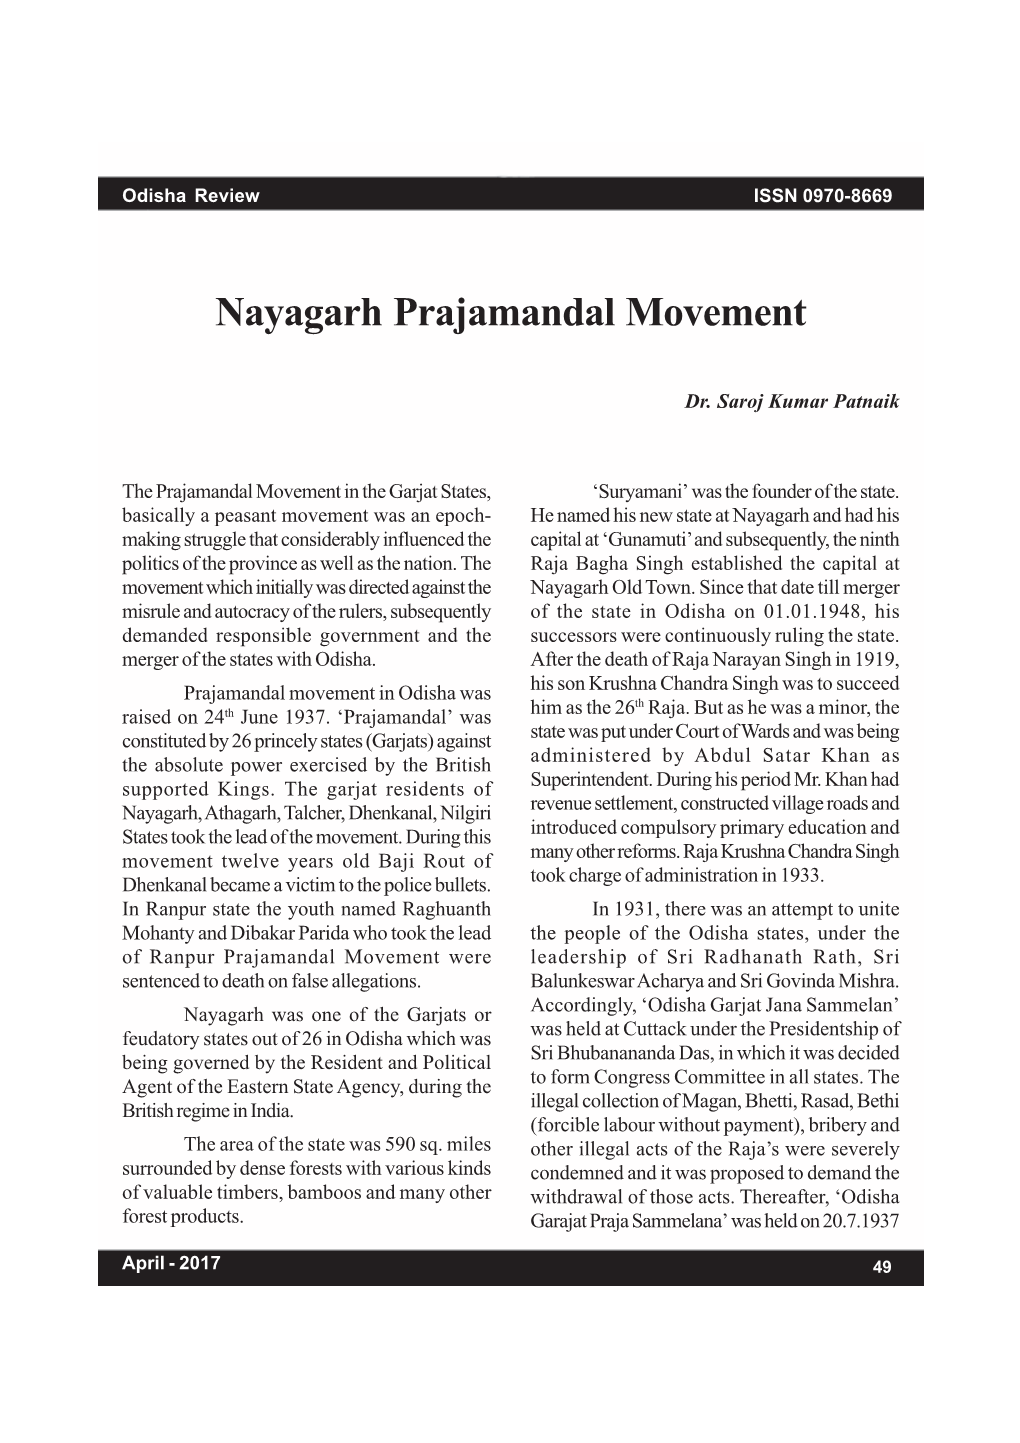 Nayagarh Prajamandal Movement